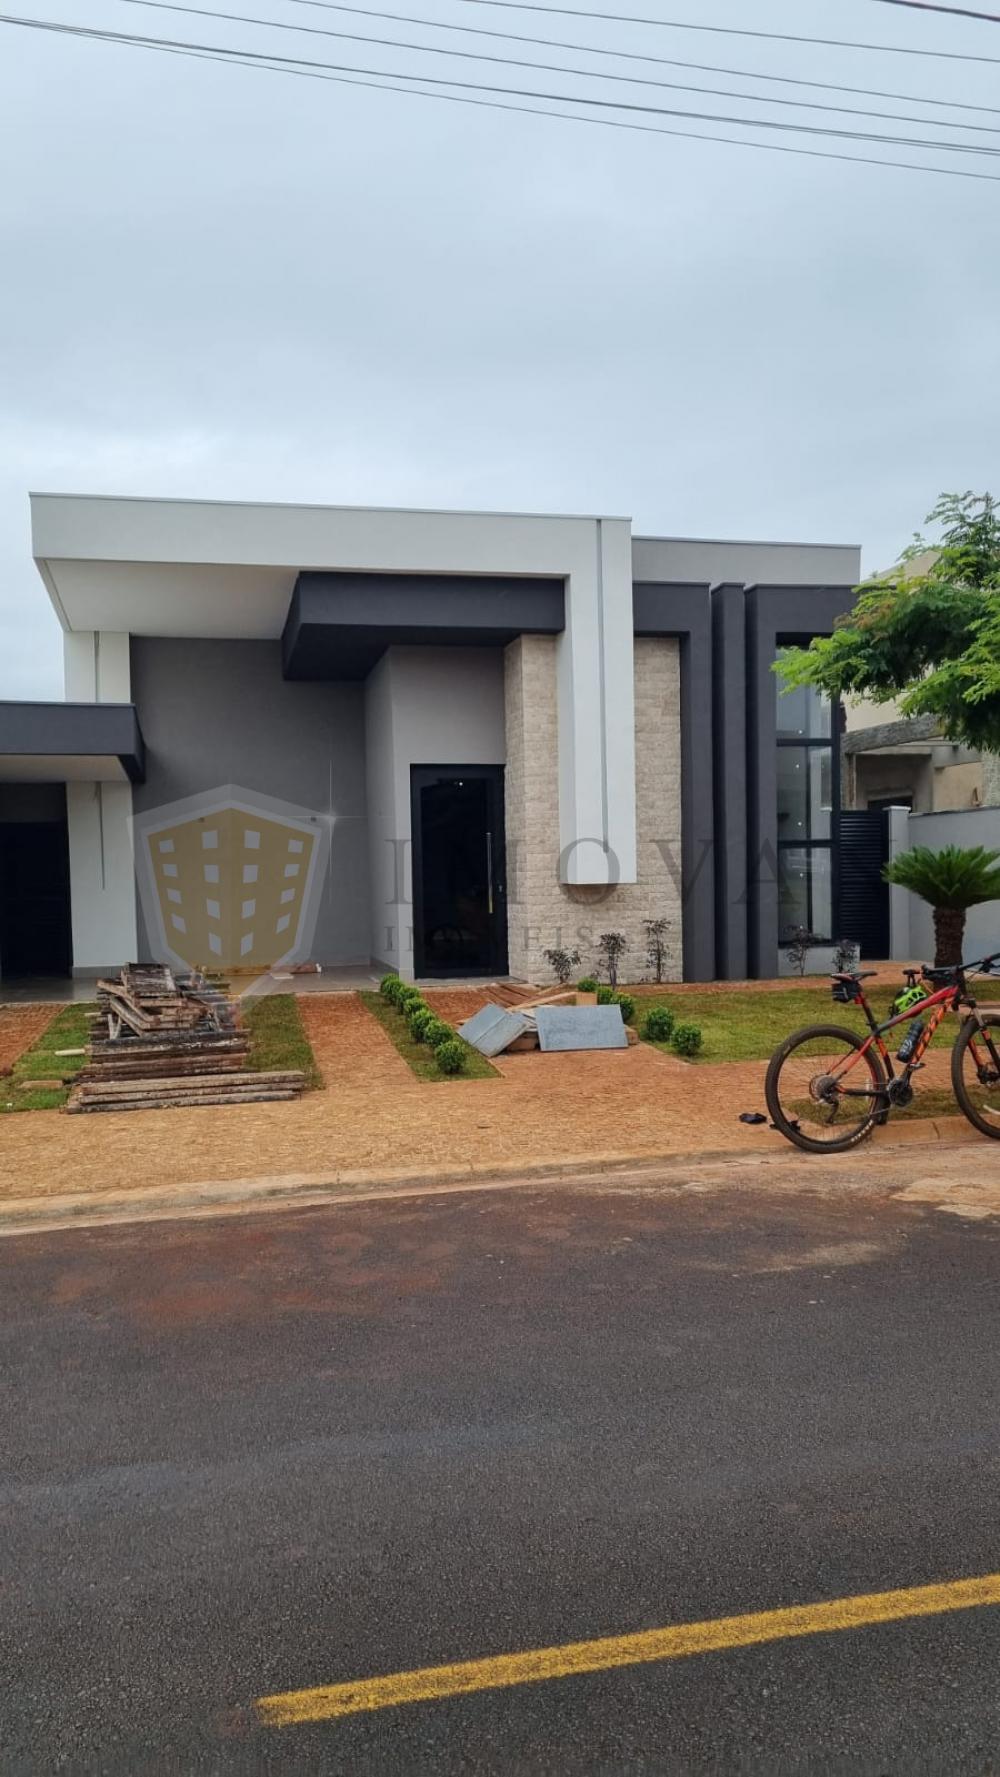 Comprar Casa / Condomínio em Ribeirão Preto R$ 1.550.000,00 - Foto 1